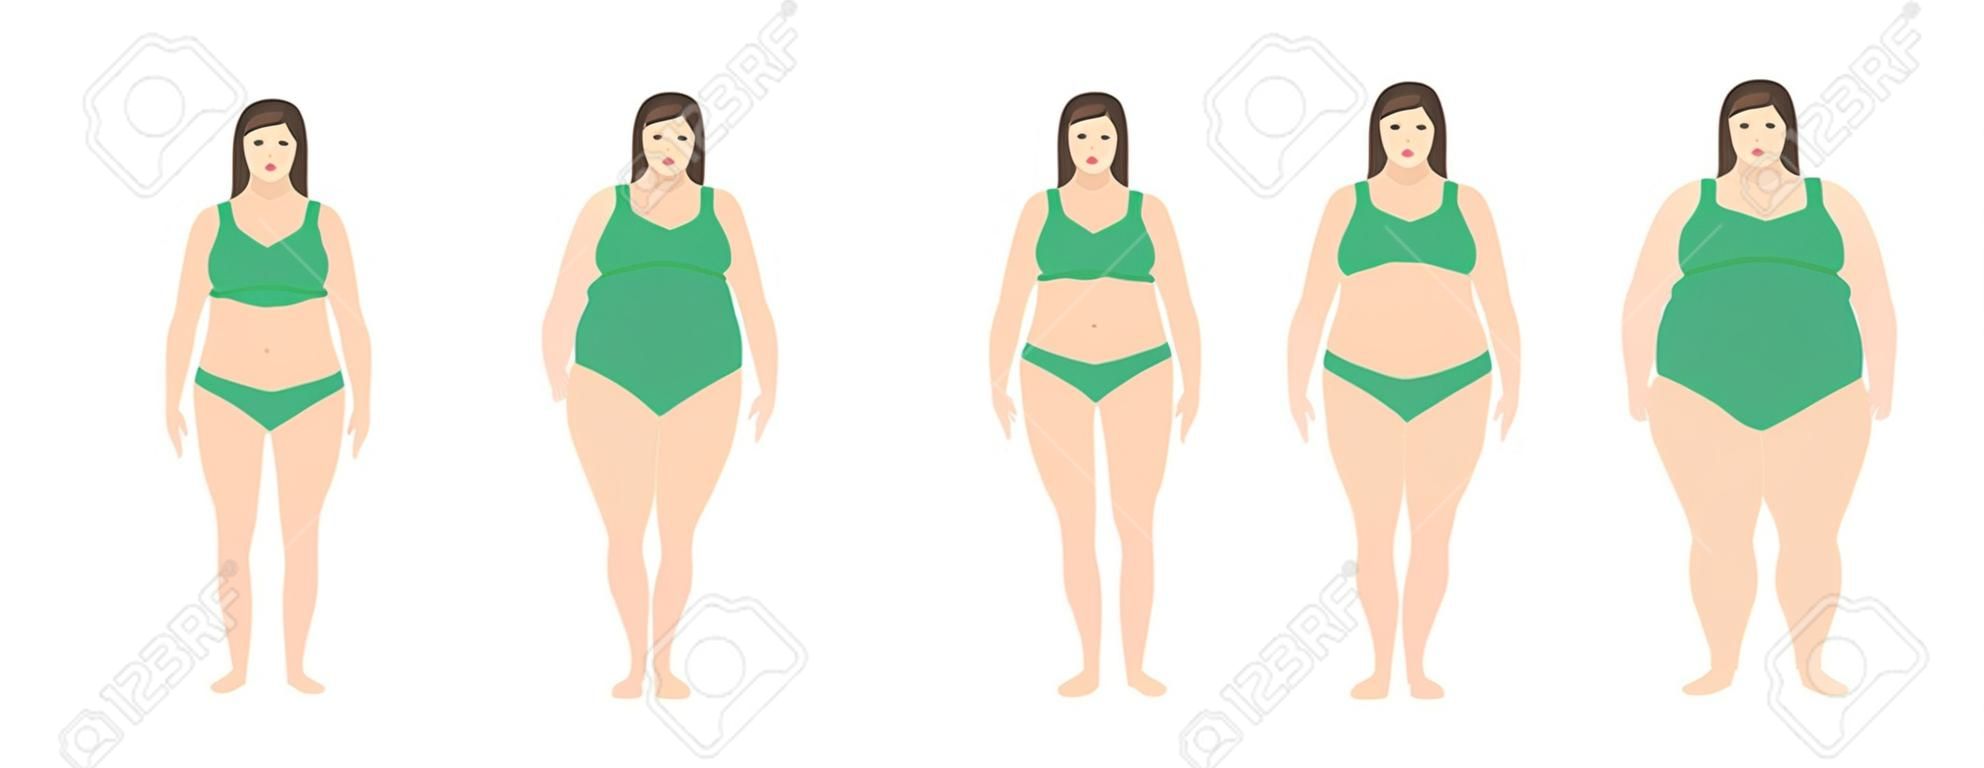 Illustration vectorielle des femmes avec un poids différent de l'anorexie à extrêmement obèse. Indice de masse corporelle, concept de perte de poids.